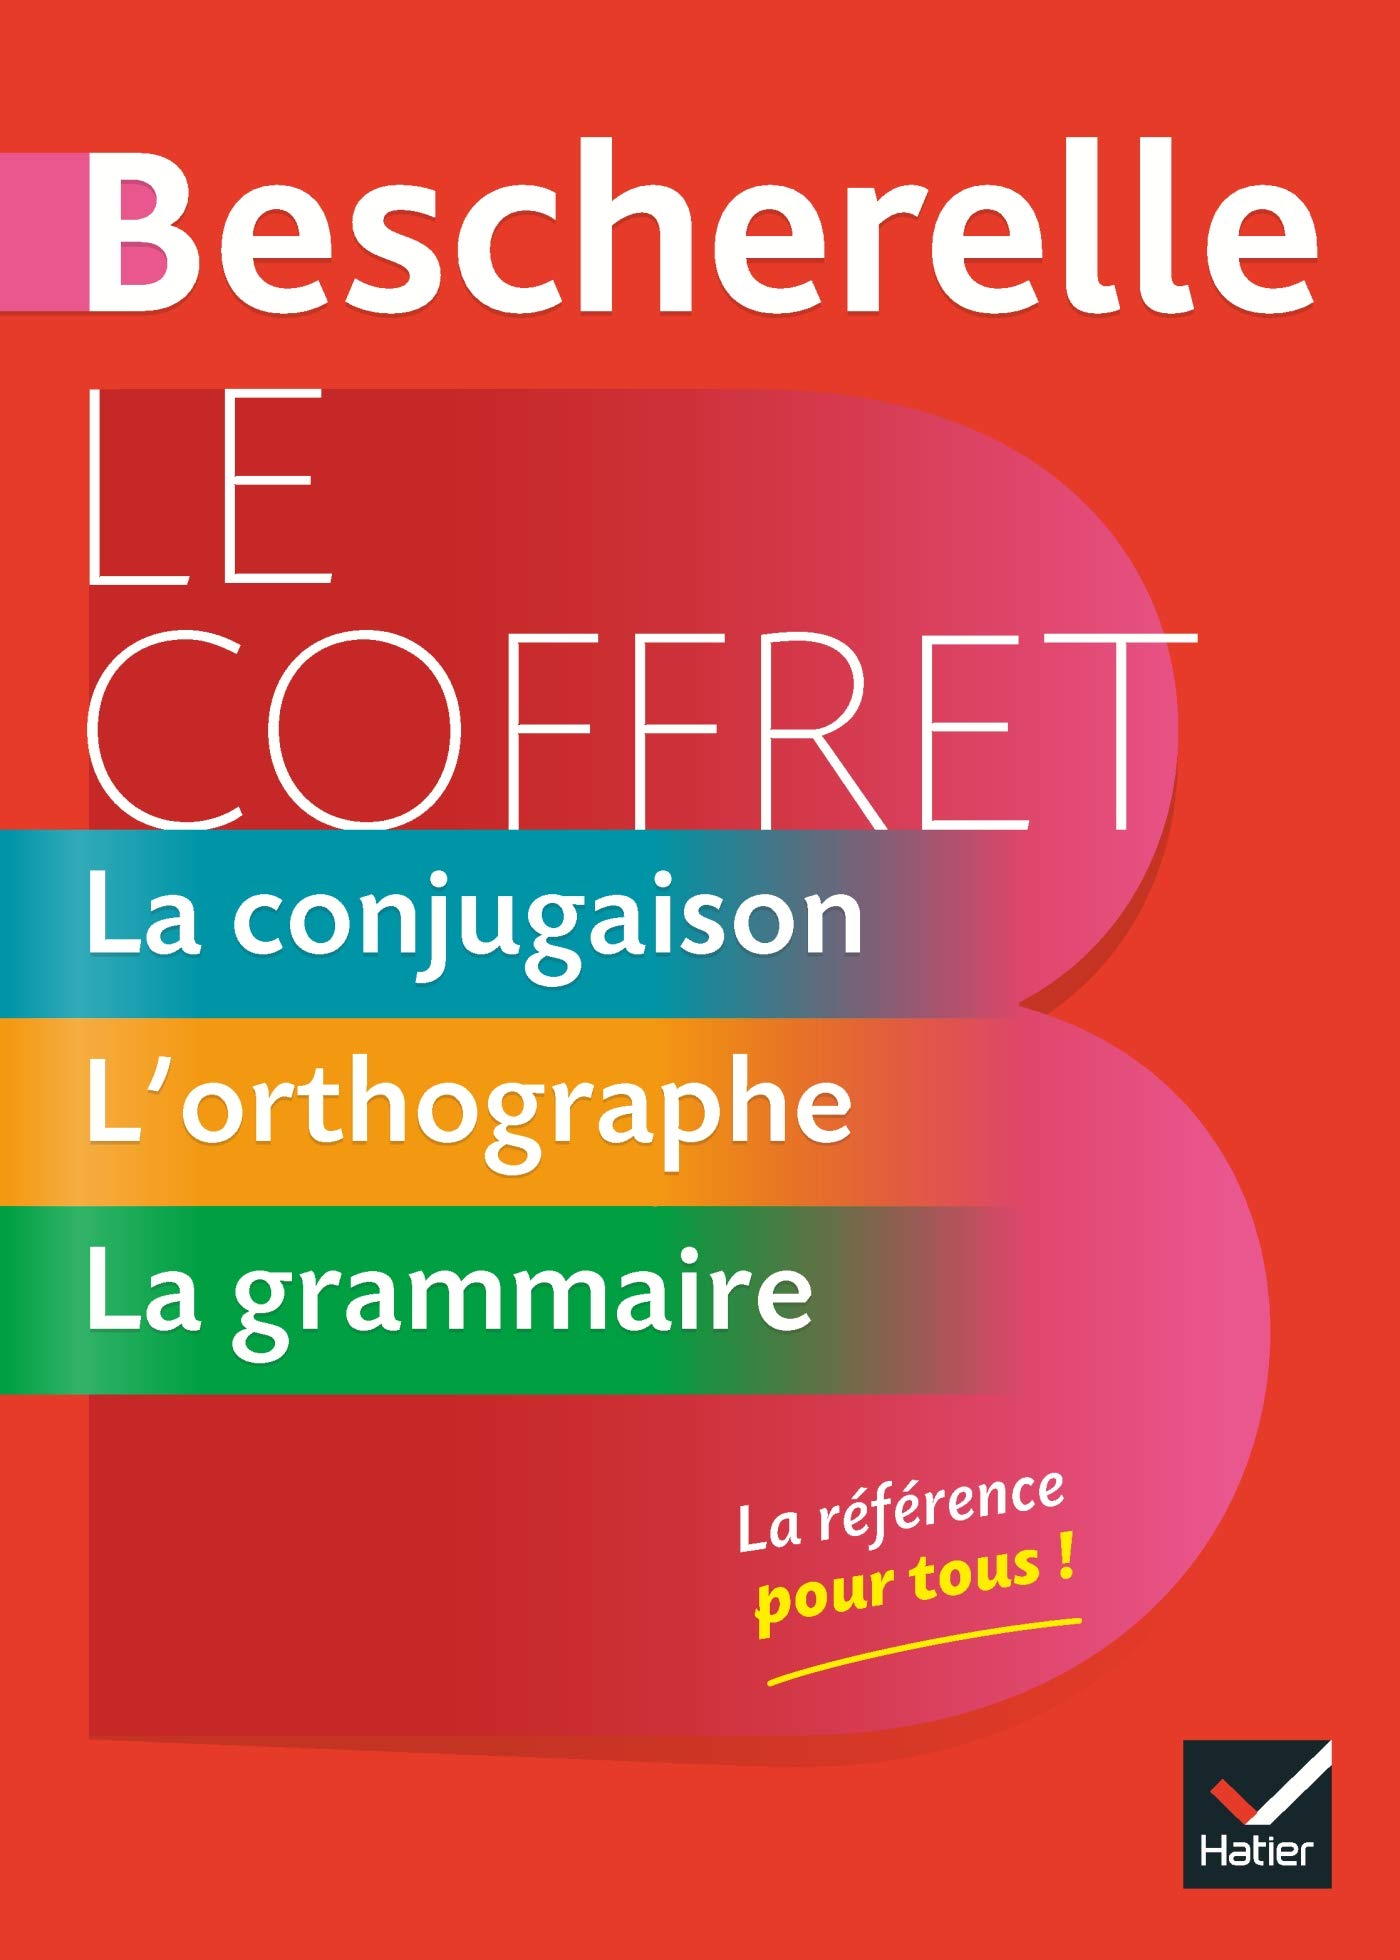 Bescherelle Le coffret de la langue française: La conjugaison, L orthographe, La grammaire